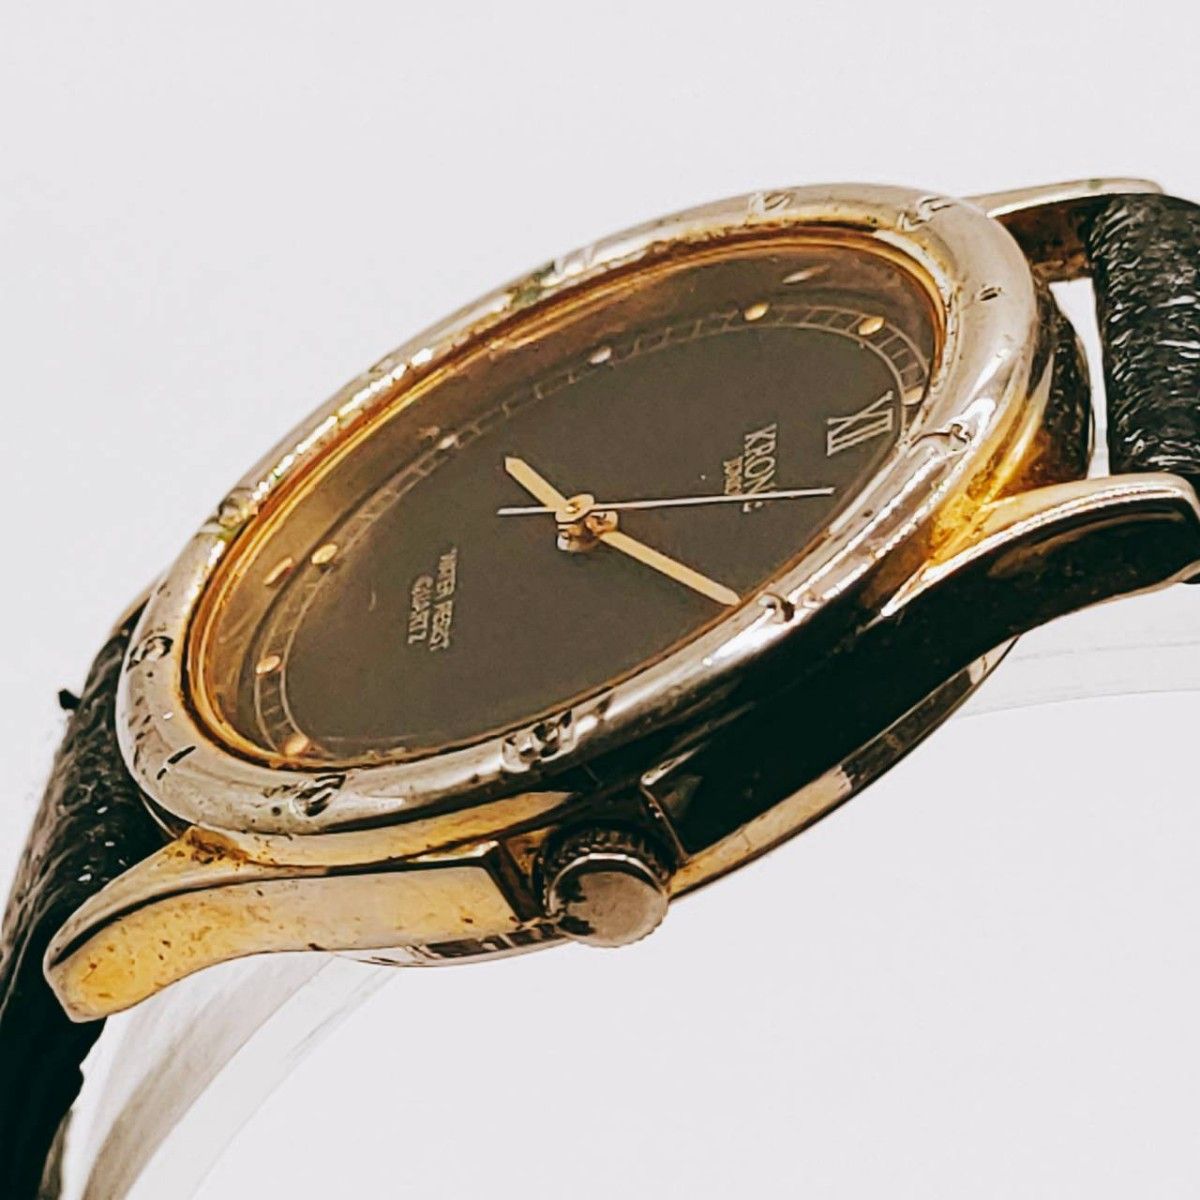 #14【レトロ】KRONE クローネ 腕時計 アナログ 3針 黒文字盤 シルバー基調 時計 とけい トケイ アクセ ヴィンテージ